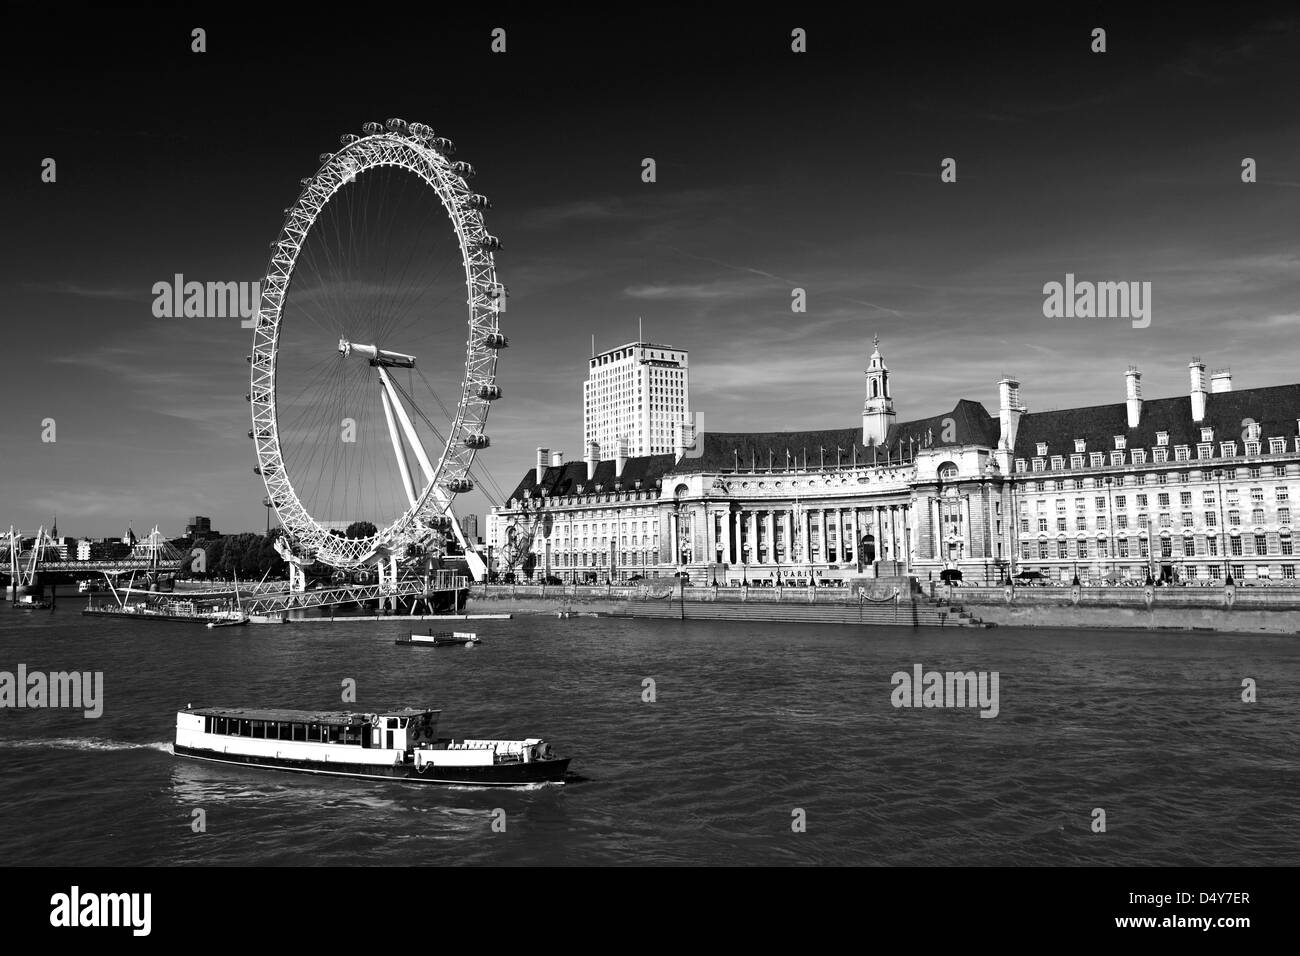 Verano, British Airways London Eye, la Noria del Milenio, South Bank, el río Támesis, Lambeth, Londres, Inglaterra Foto de stock